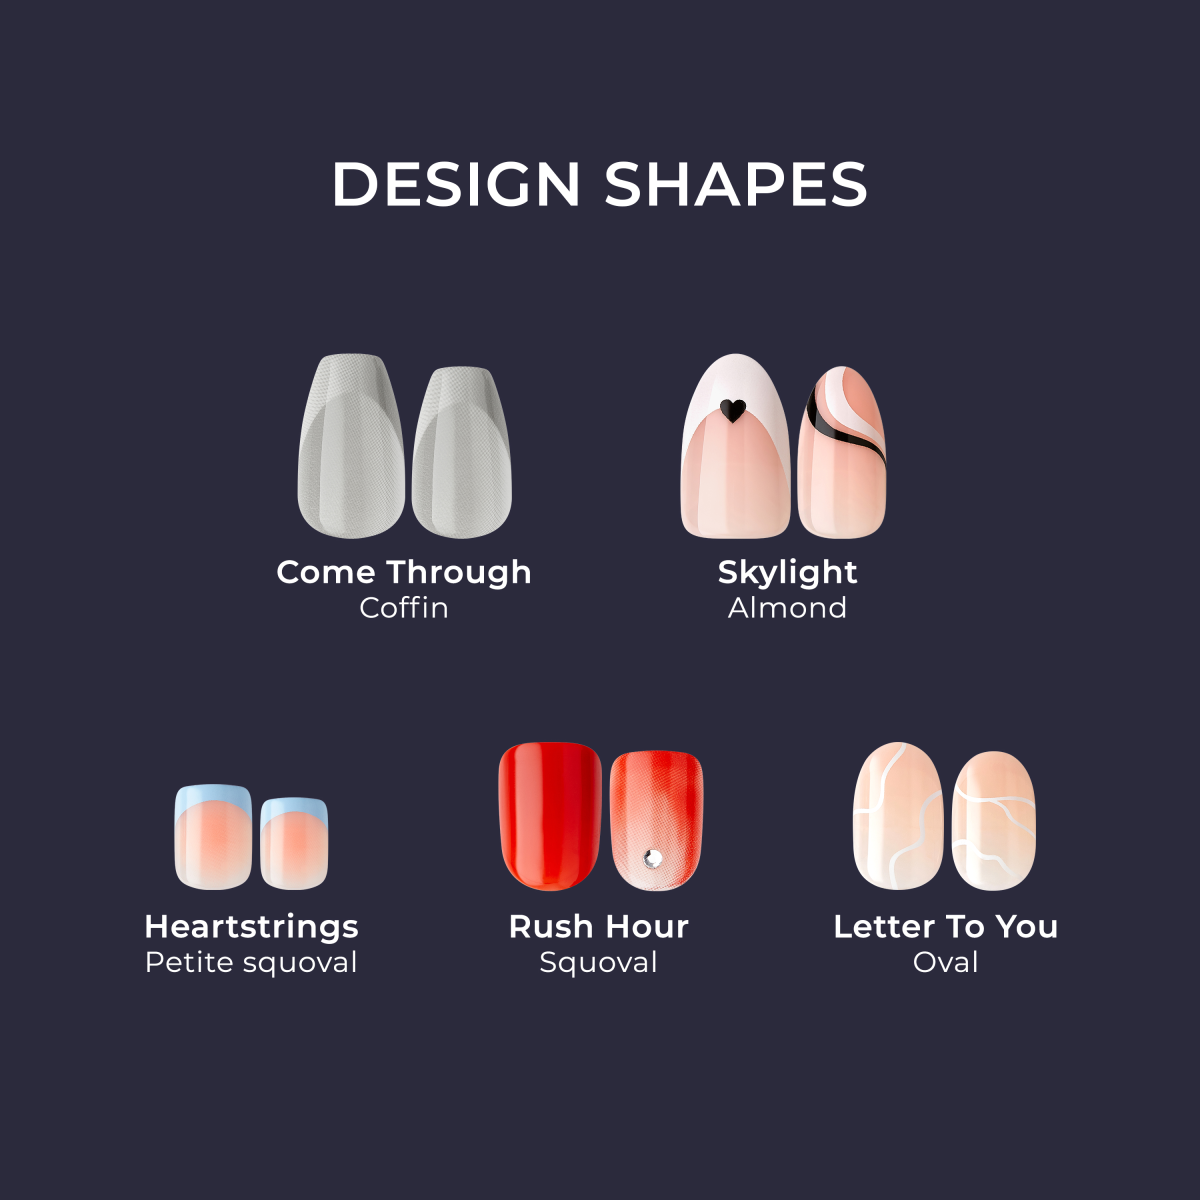 imPRESS Design Press-On Nails - Vision